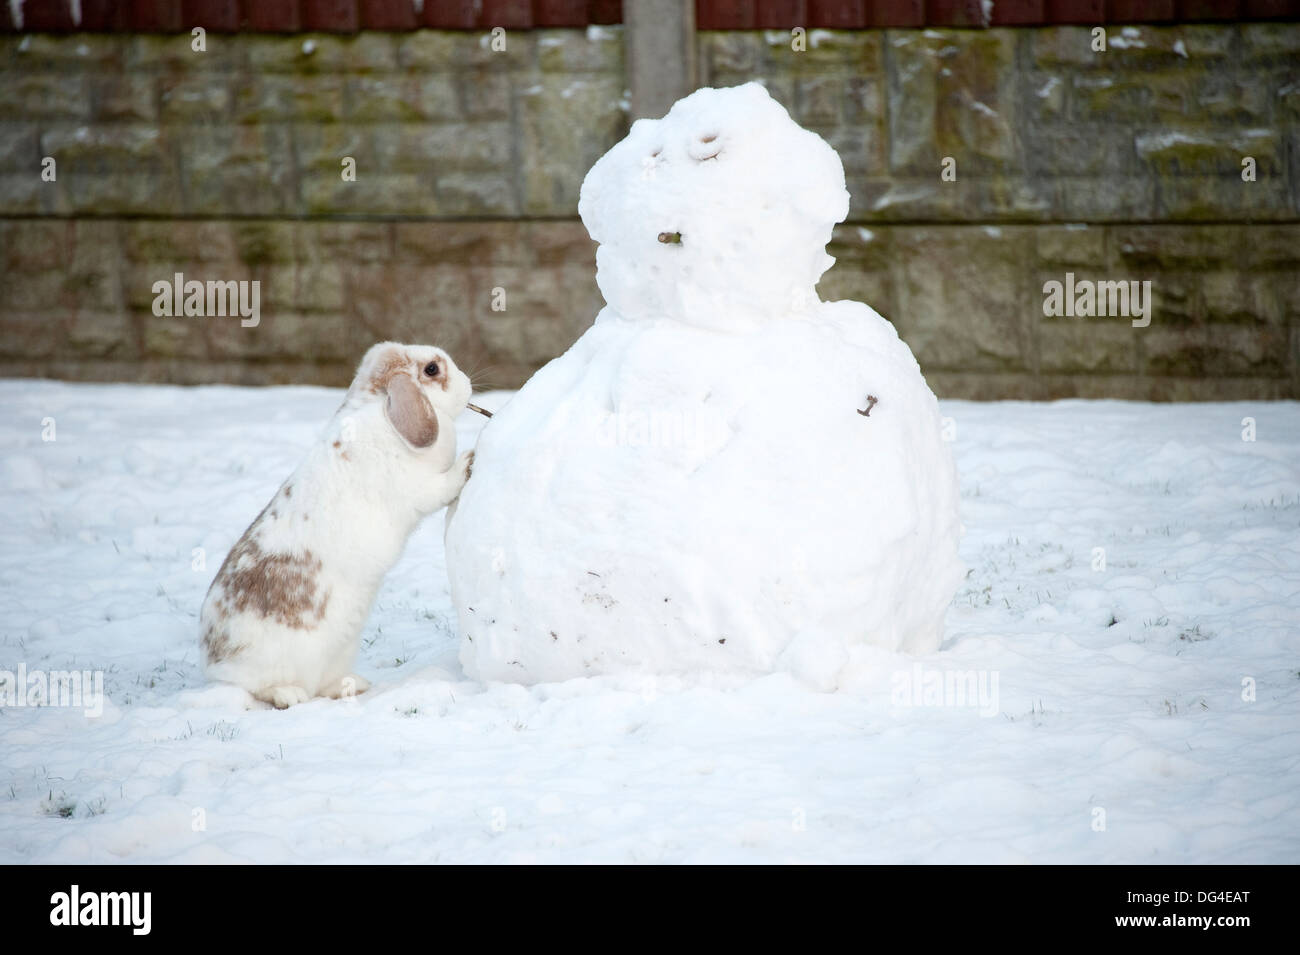 Lop eared weiße Kaninchen im Winter Schneemann bauen Stockfoto